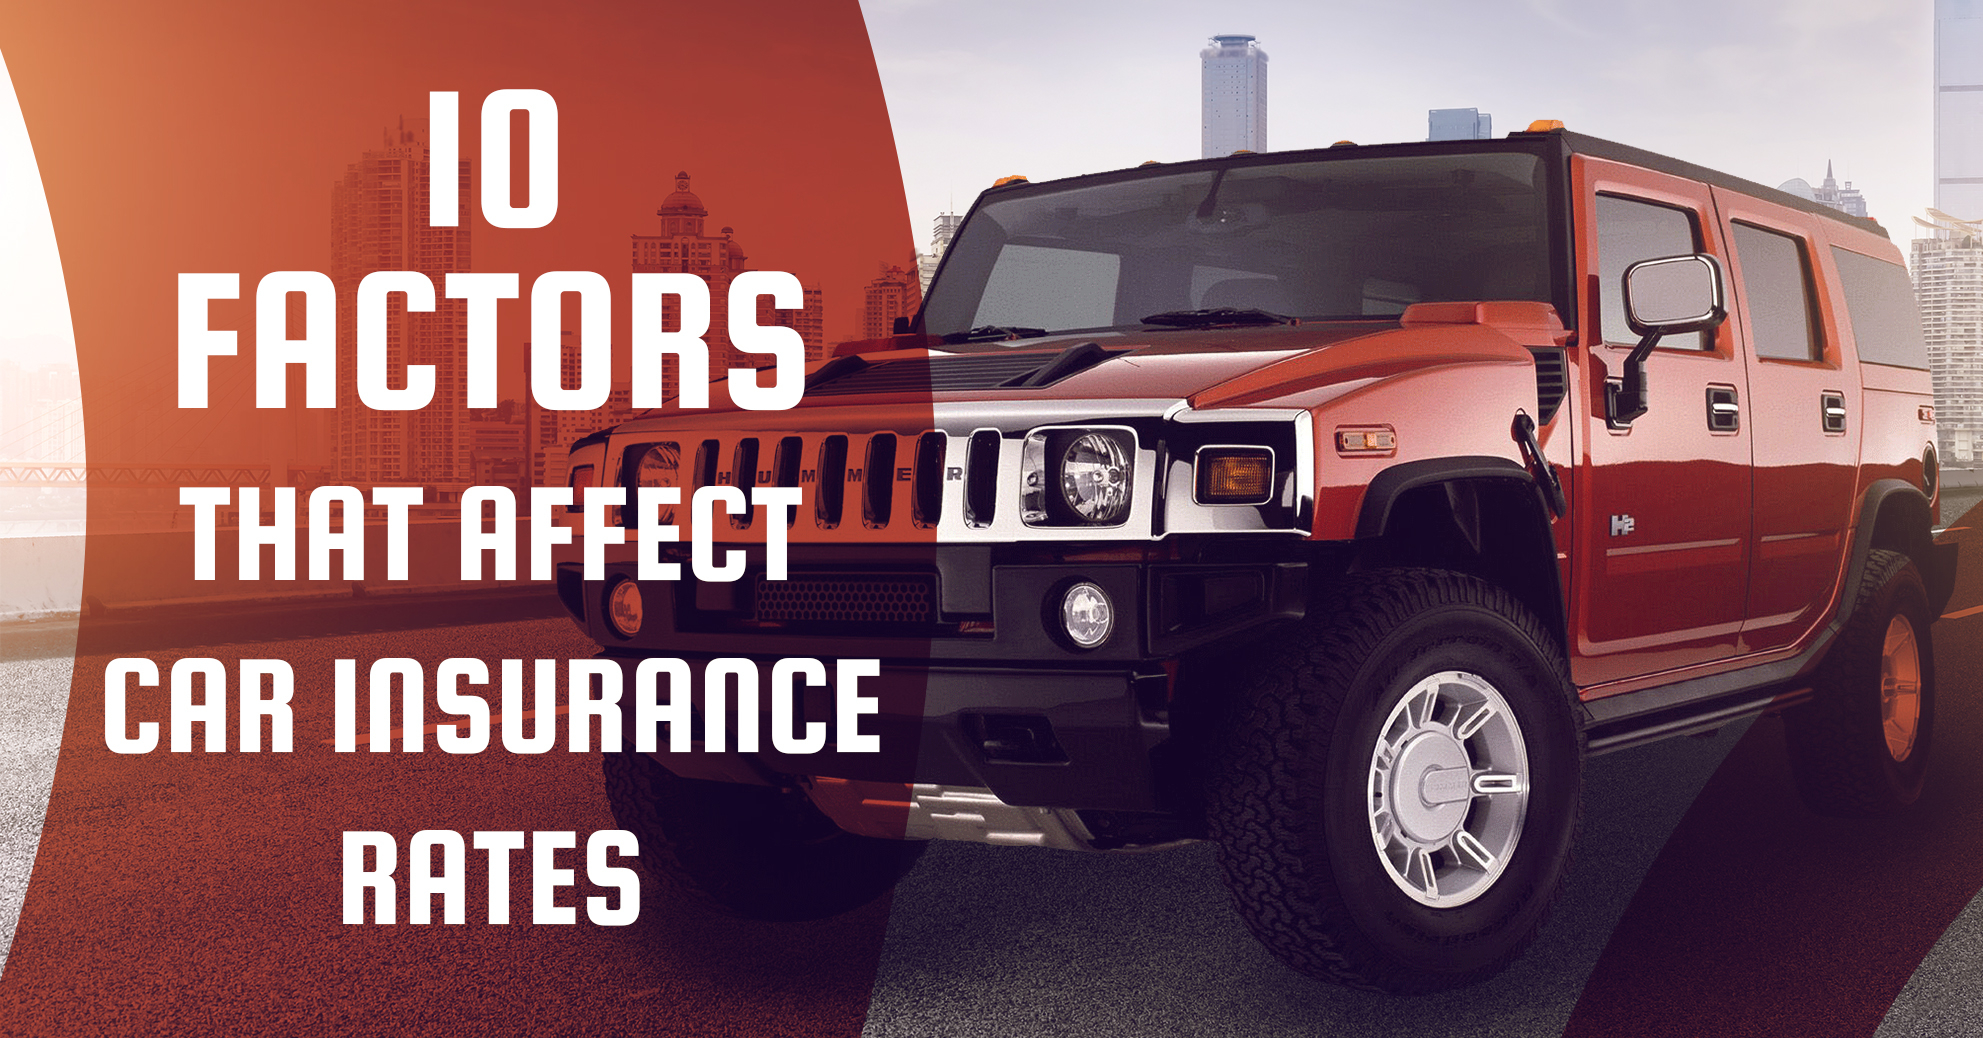 10 Factors That Affect Your Car Insurance Rates Money Clinic inside measurements 1983 X 1038